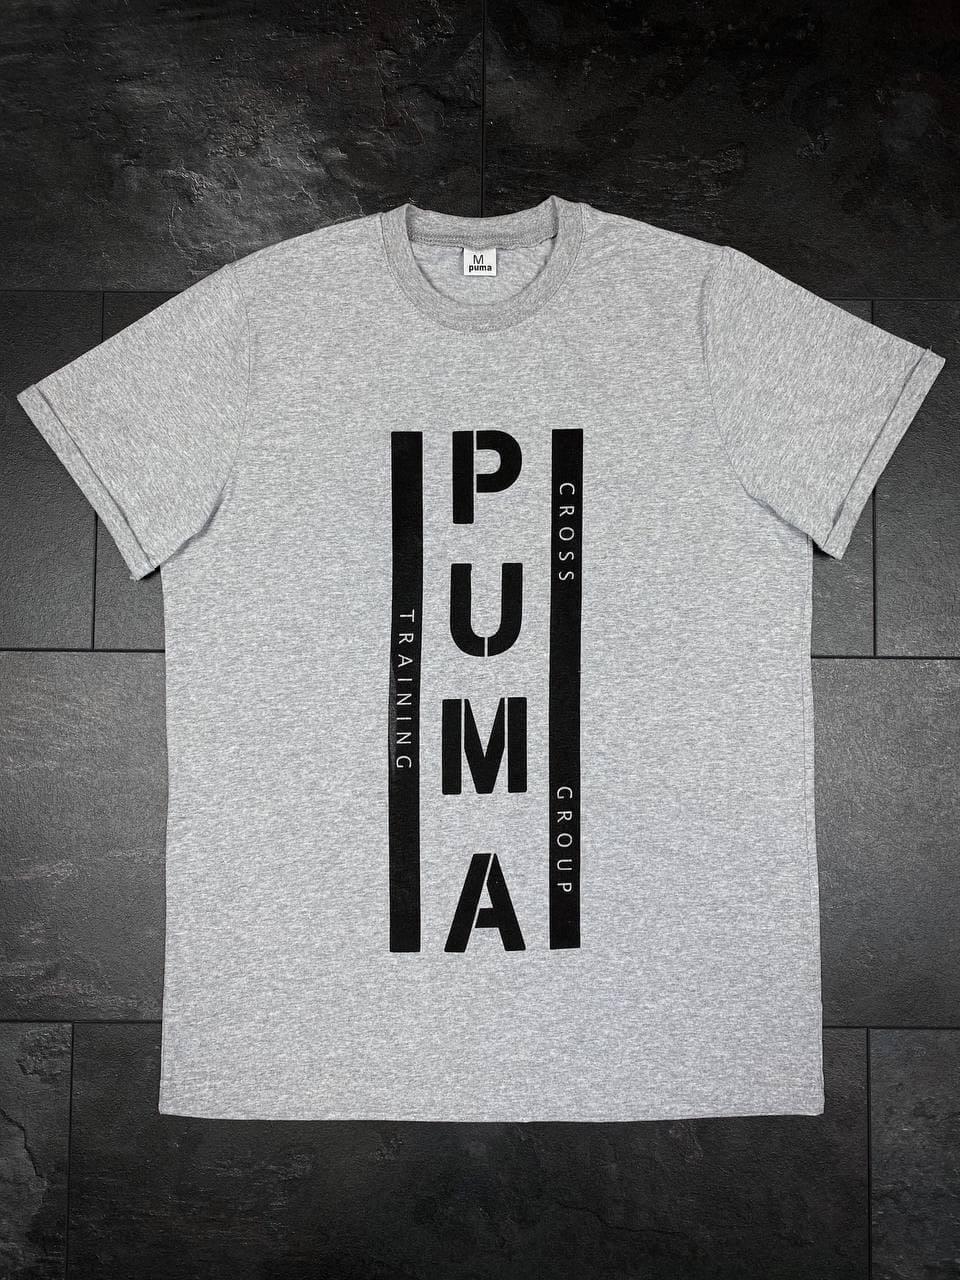 Чоловіча футболка Puma сіра, якісна молодіжна футболка на щодень.